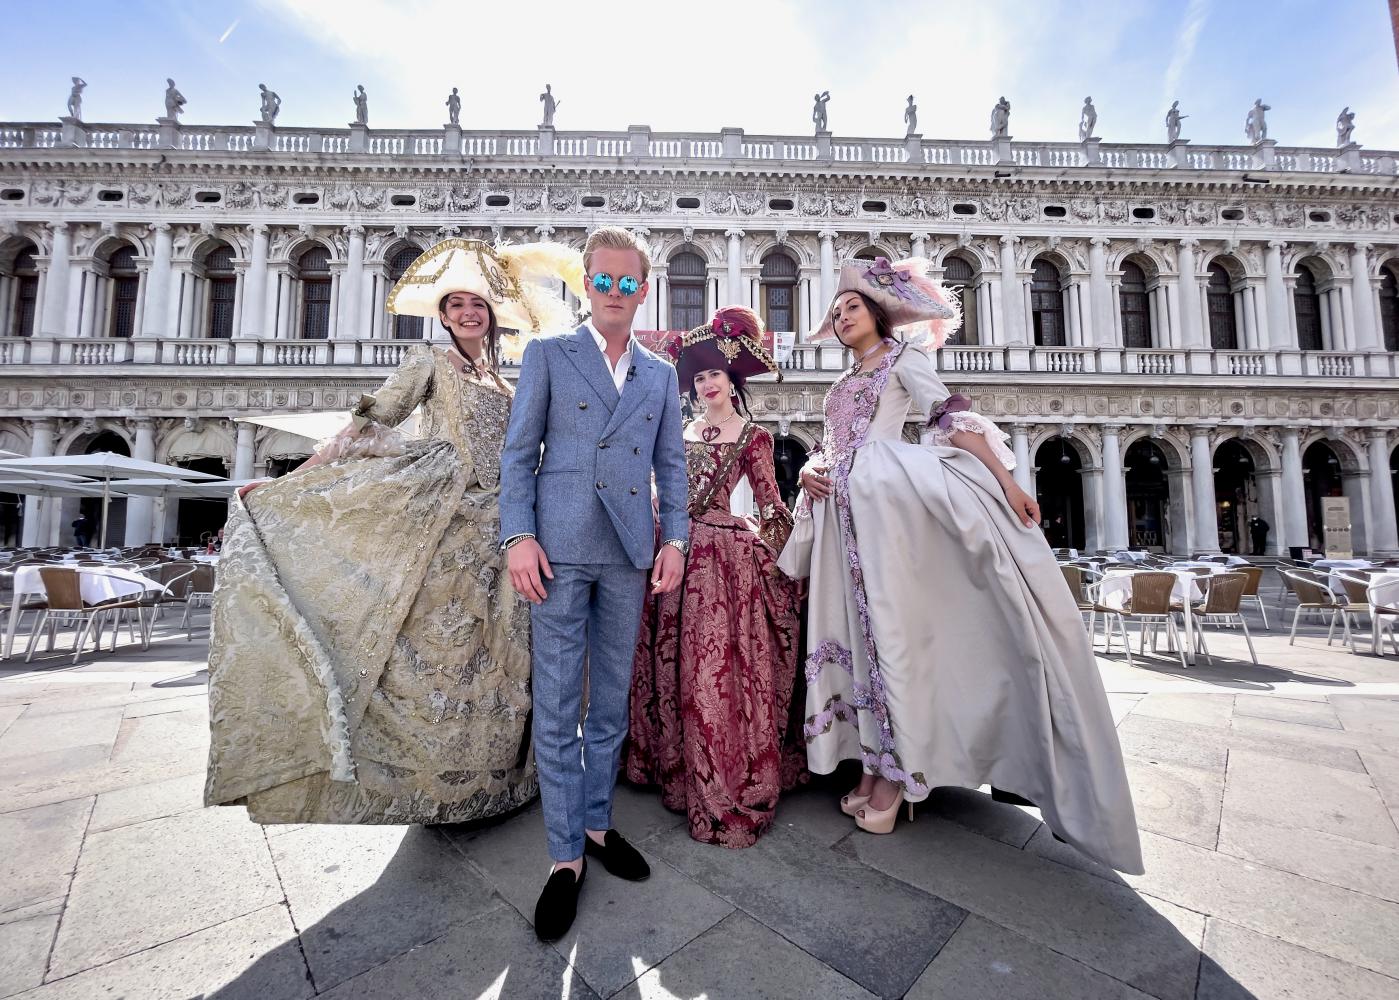  Leon Löwentraut, Künstlerdarsteller, mit venezianisch kostümierten Damen am Markusplatz in Venedig